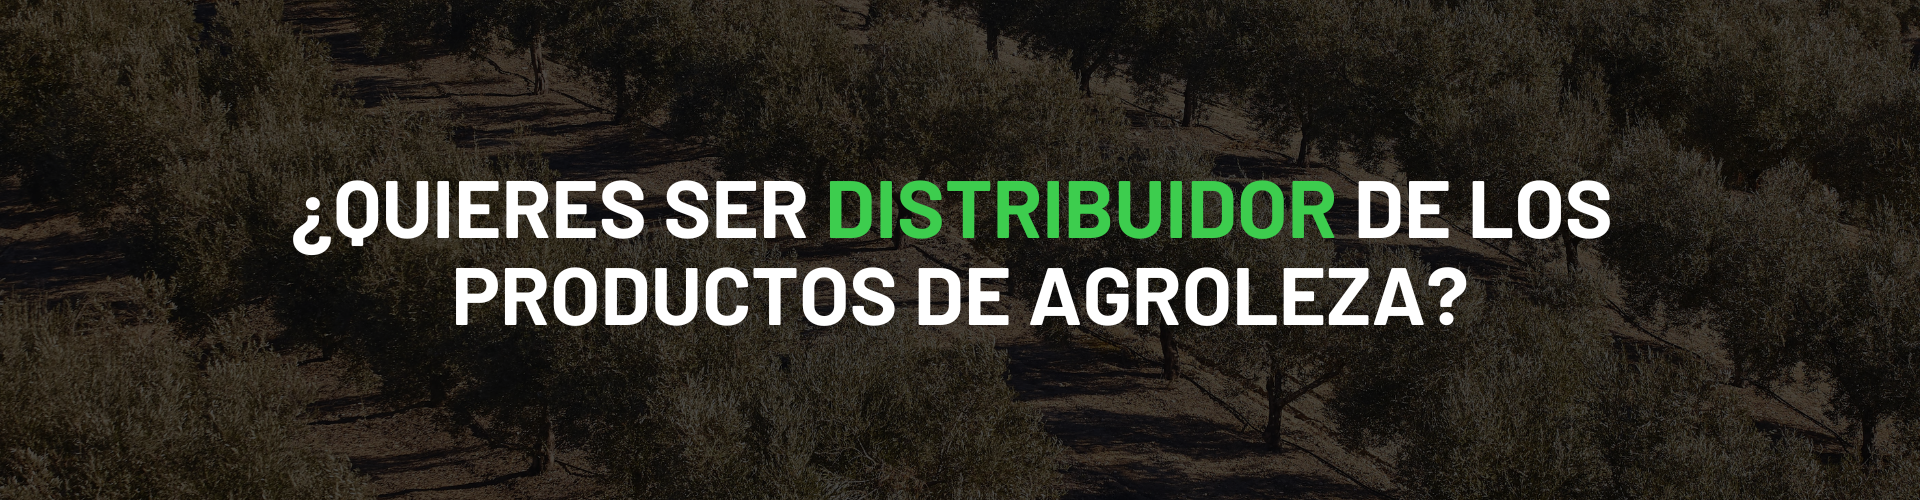 ¿Quieres ser distribuidor de Agroleza Grop?